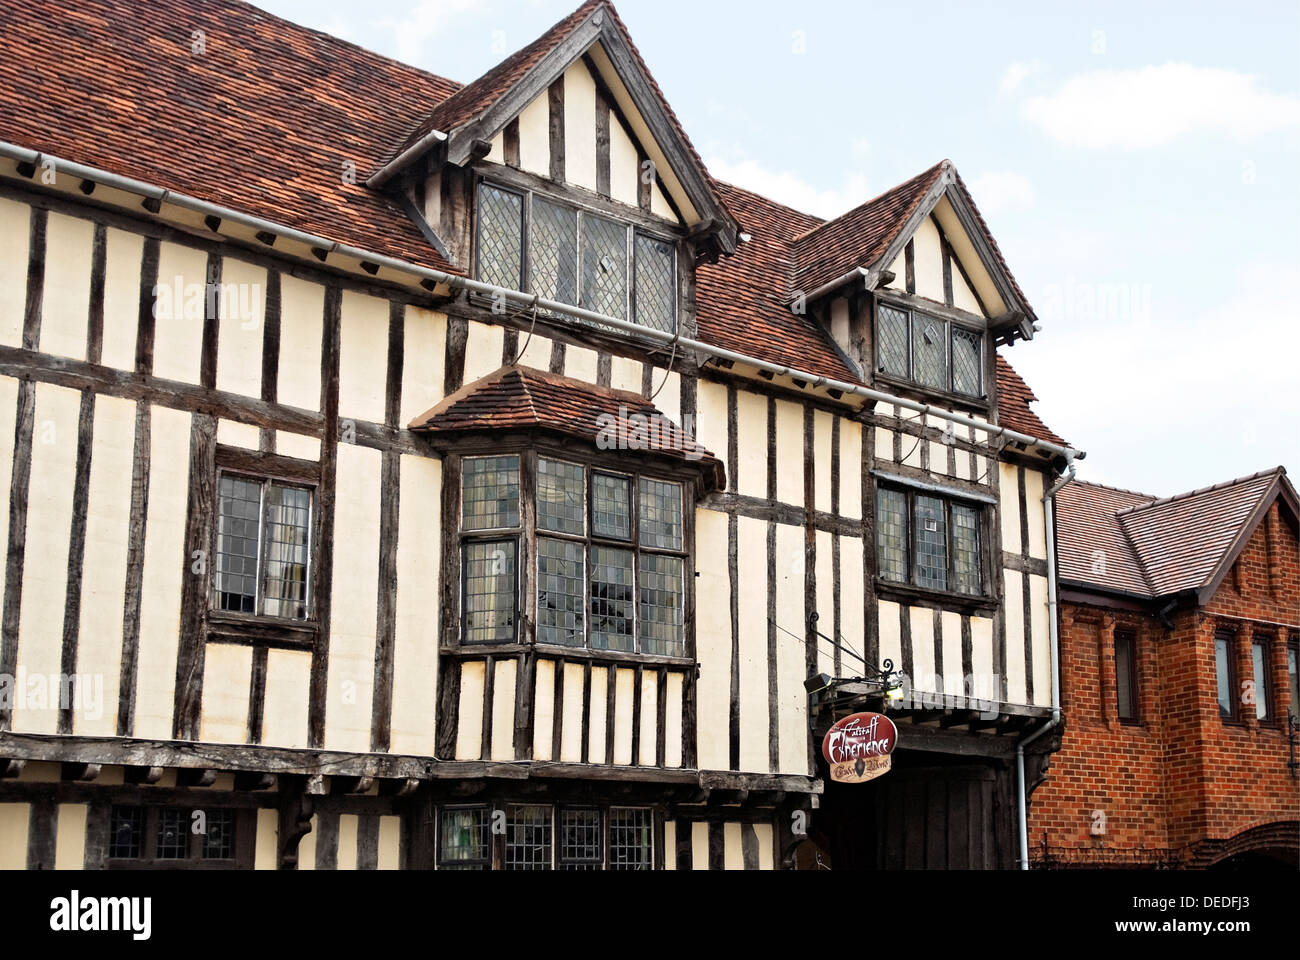 The Falstaffs Experience in Stratford-upon-Avon, einer preisgekrönten Besucherattraktion, die das 16. Jahrhundert zum Leben erweckt. Stockfoto